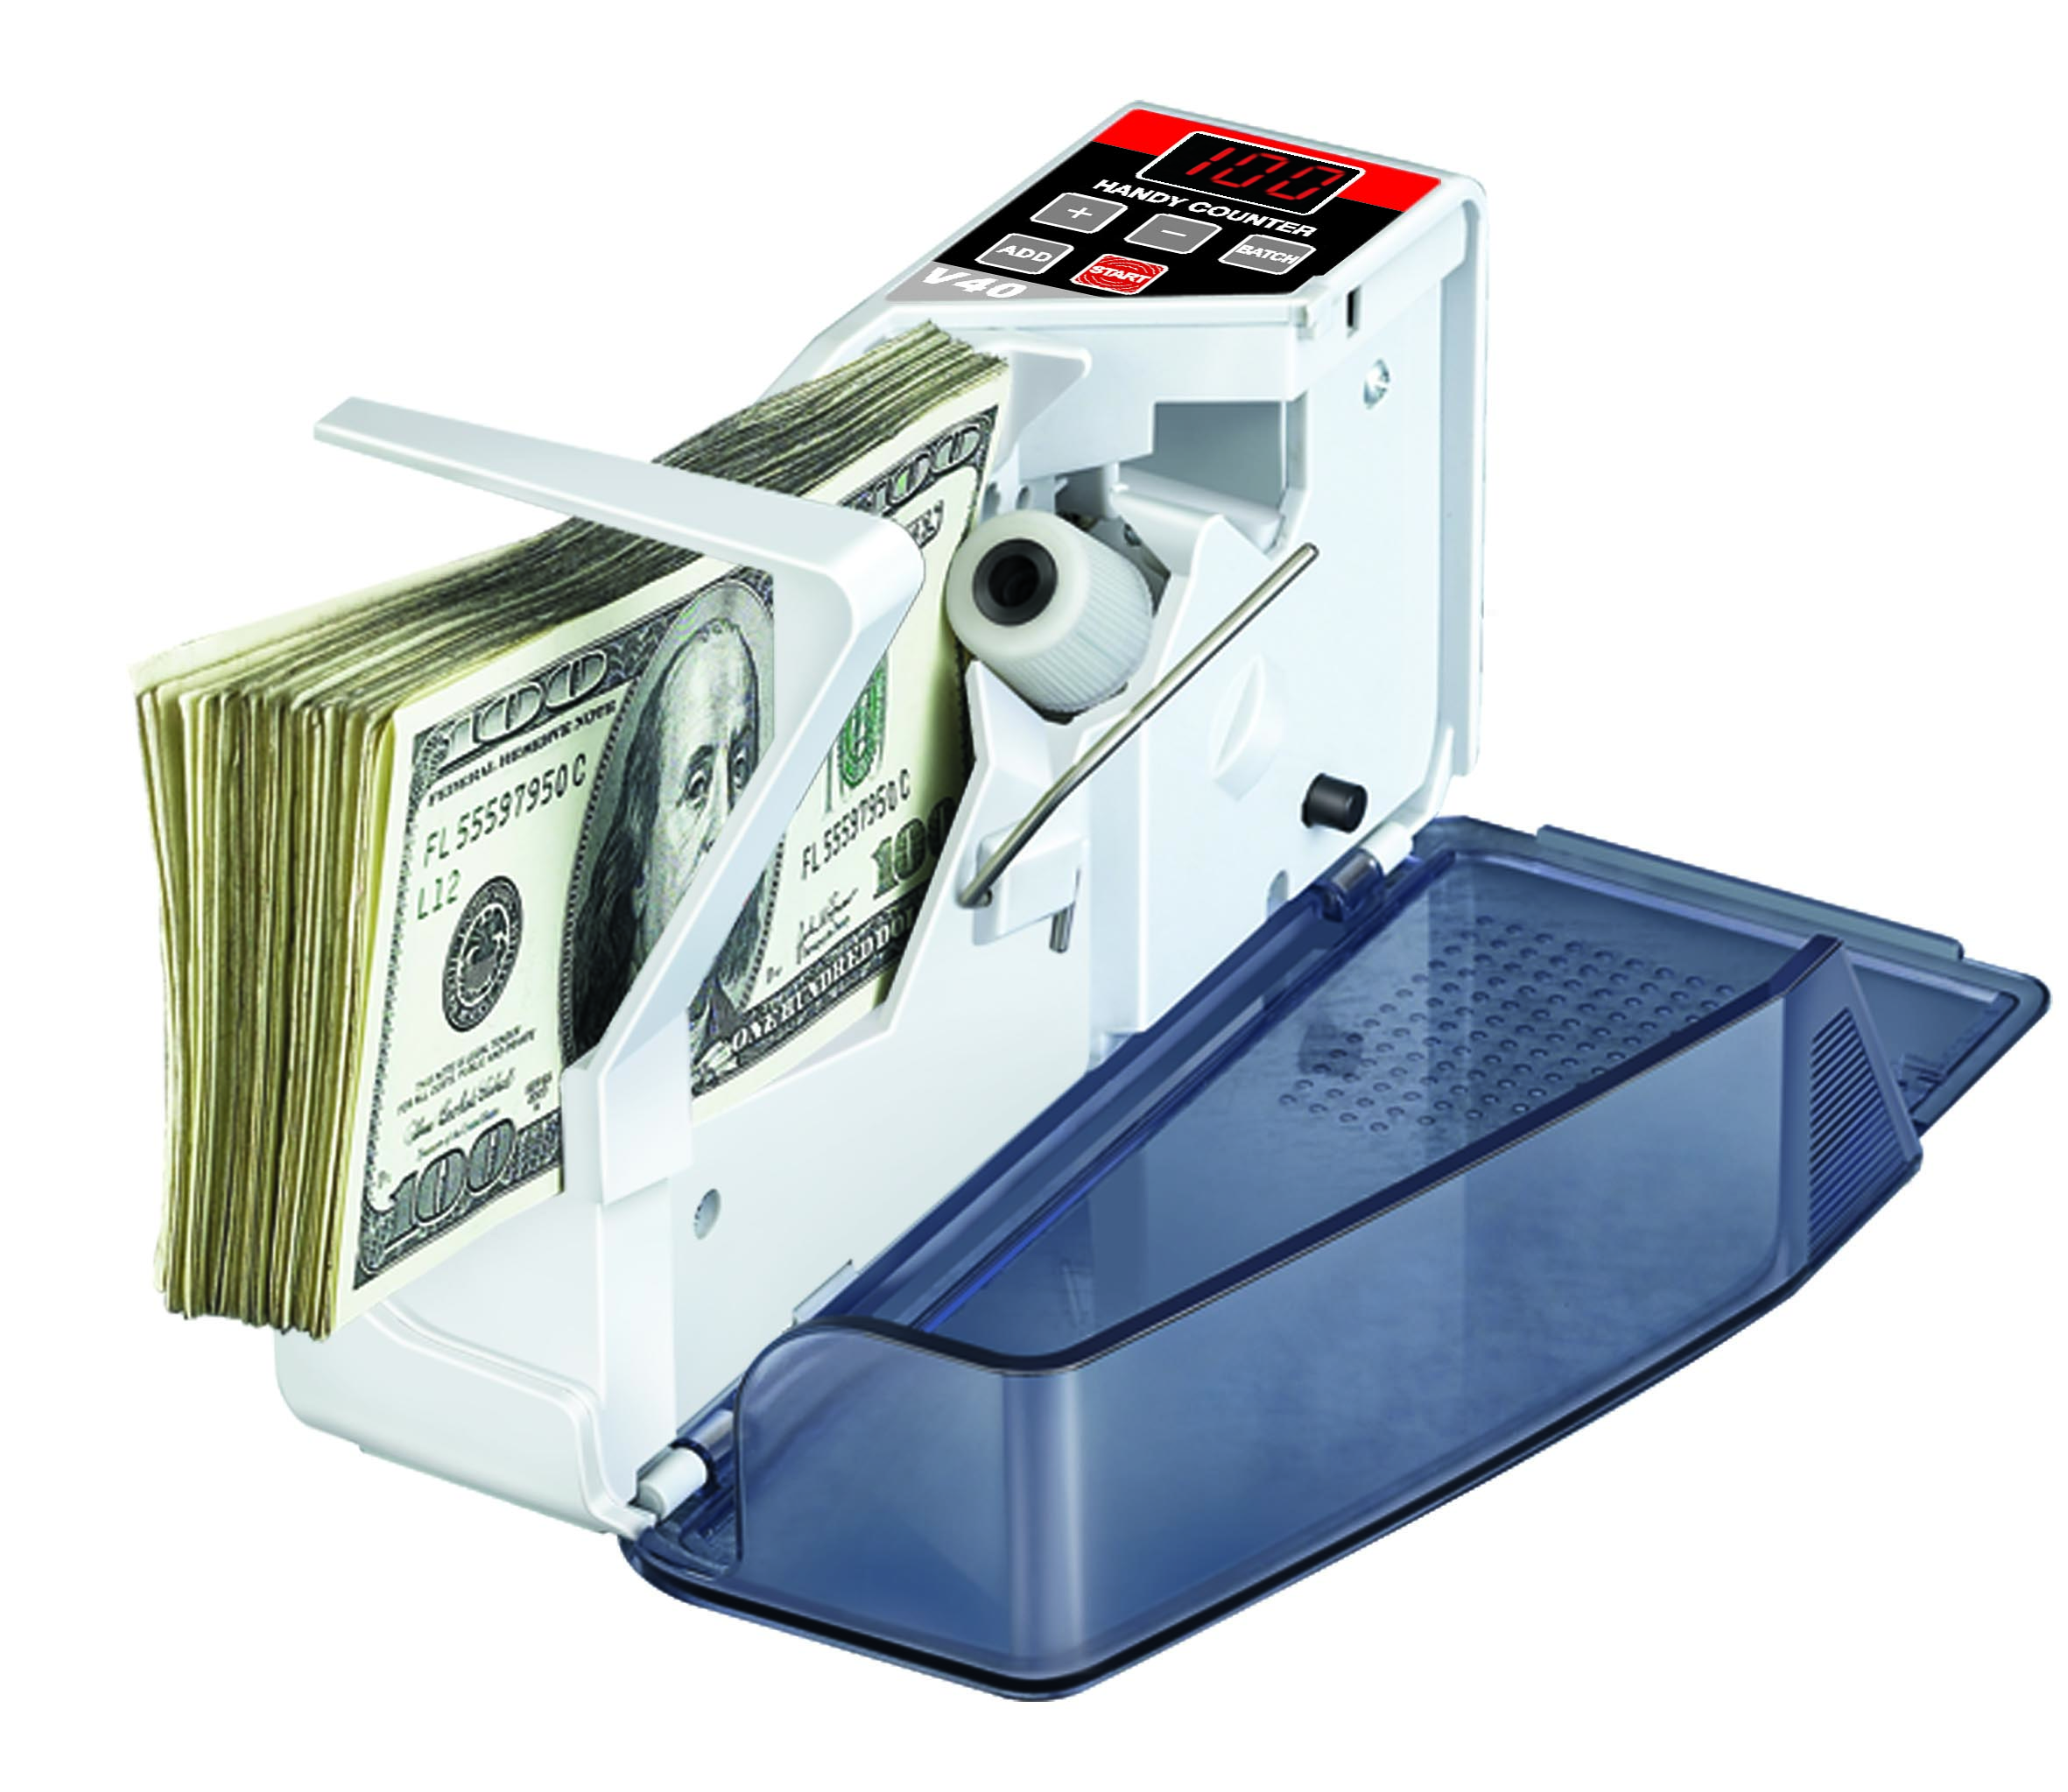 Handliche Mix Währung Handheld Counter V40 Bargeld zählen Fast Count Money Machine